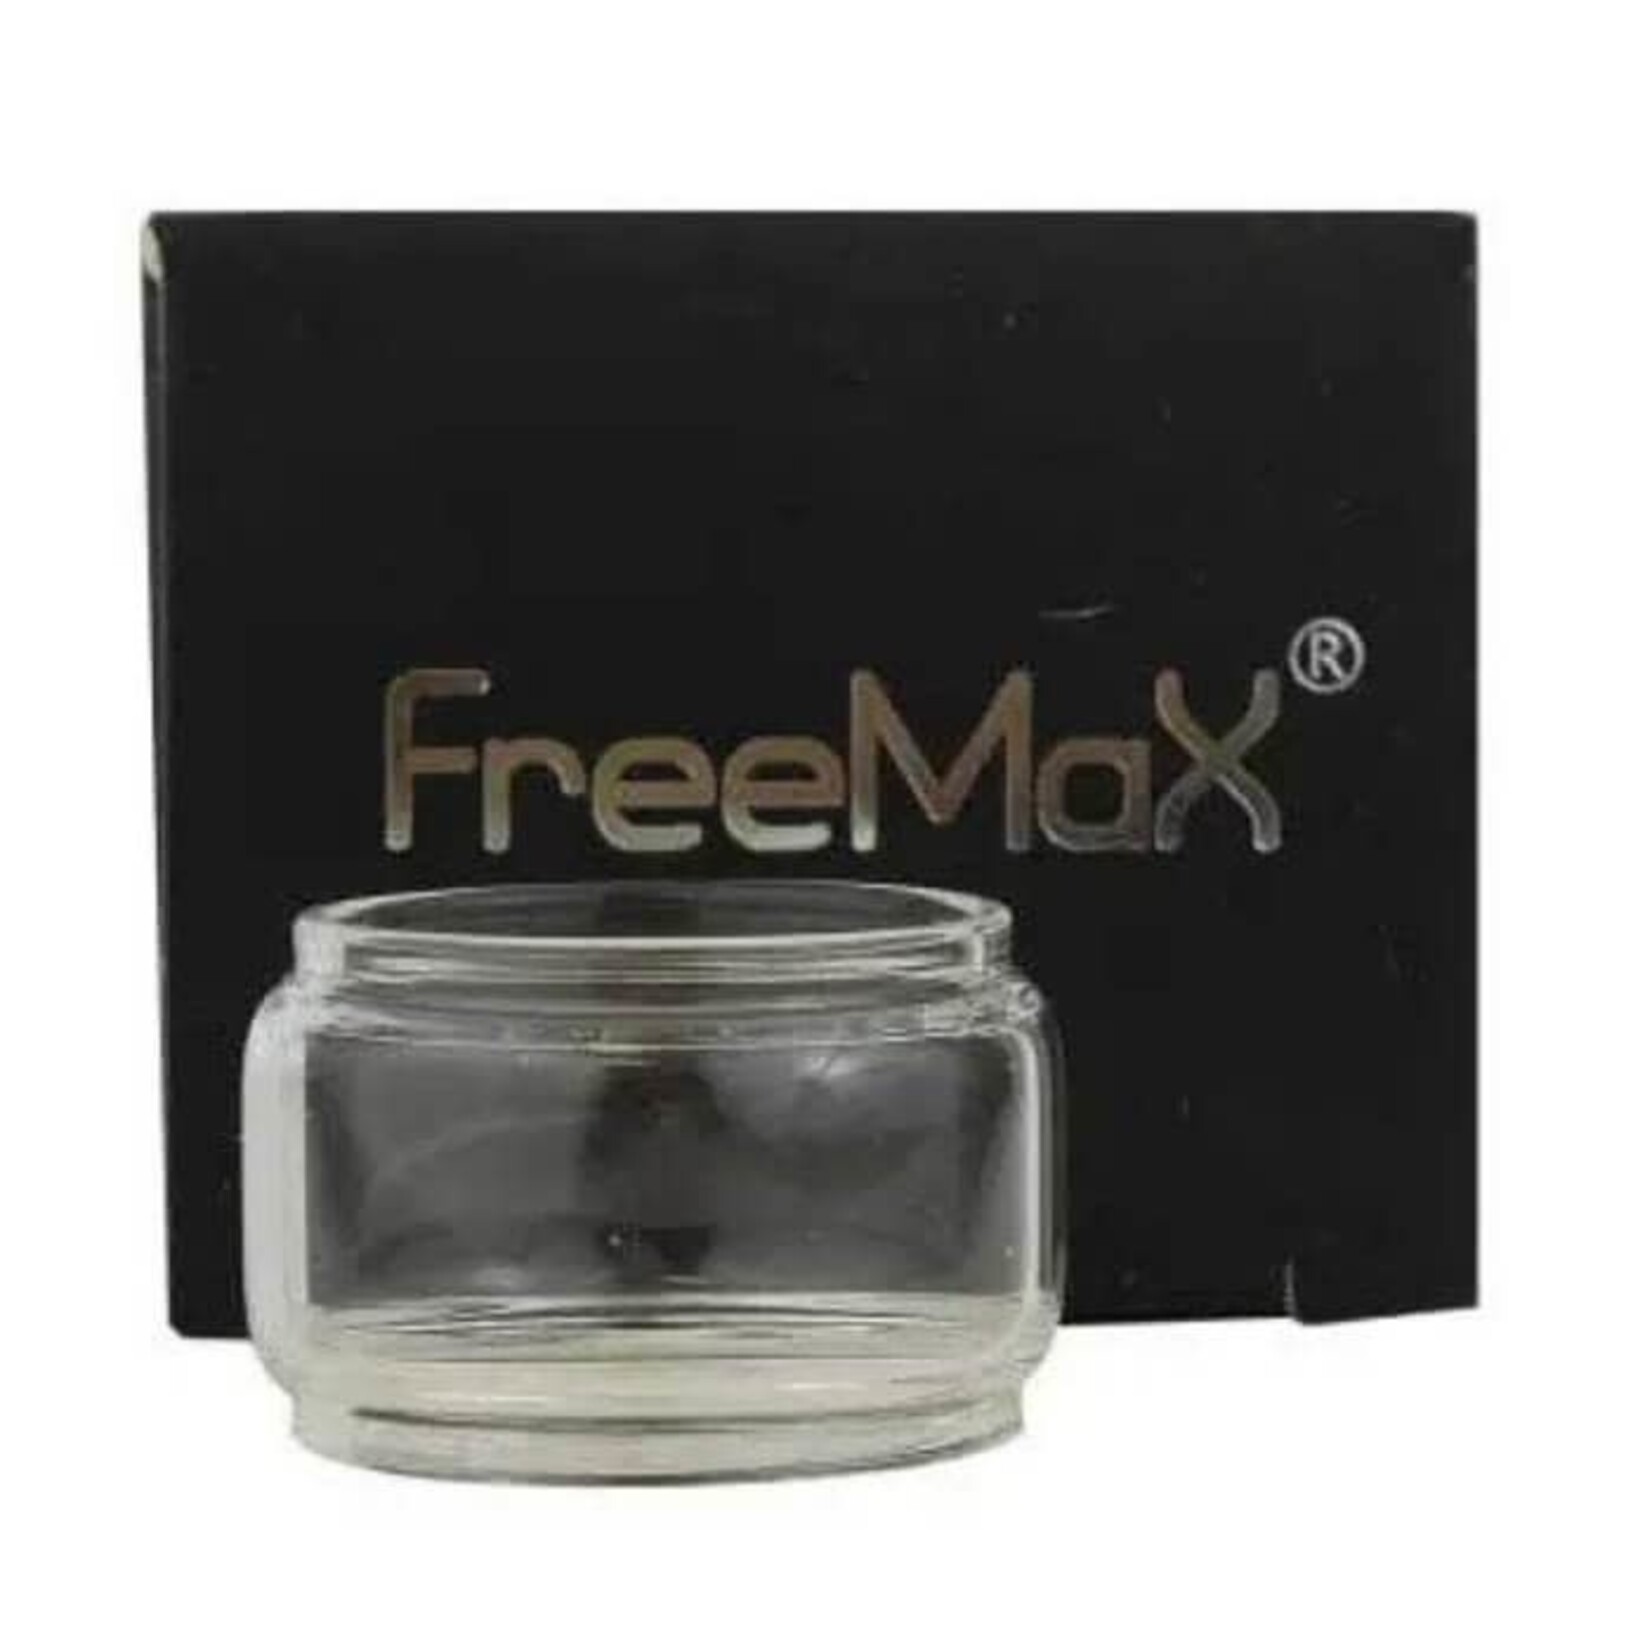 Freemax Freemax Fireluke Mesh 5ml Replacement Glass